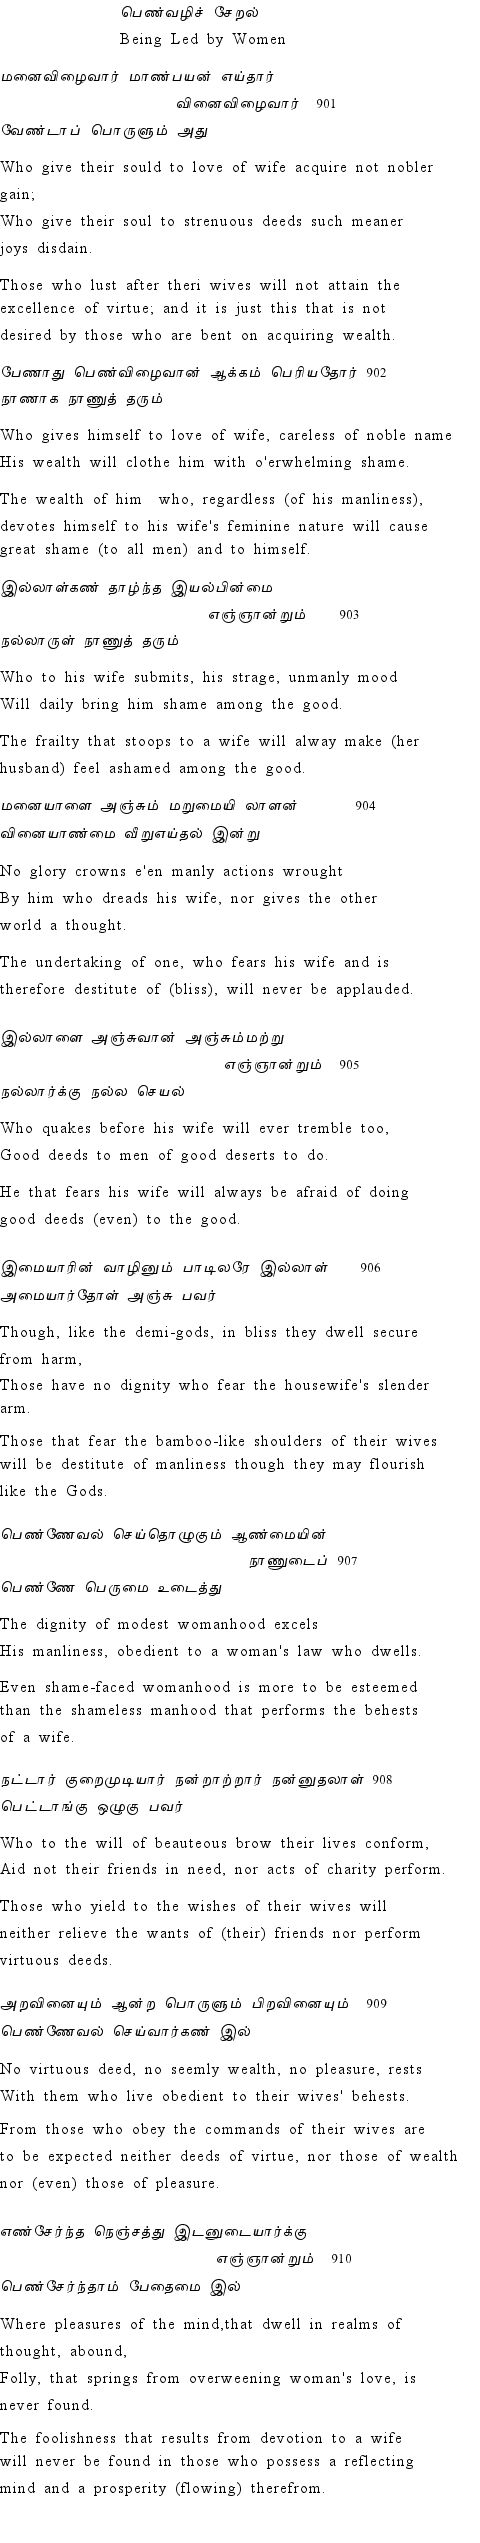 Text of Adhikaram 91